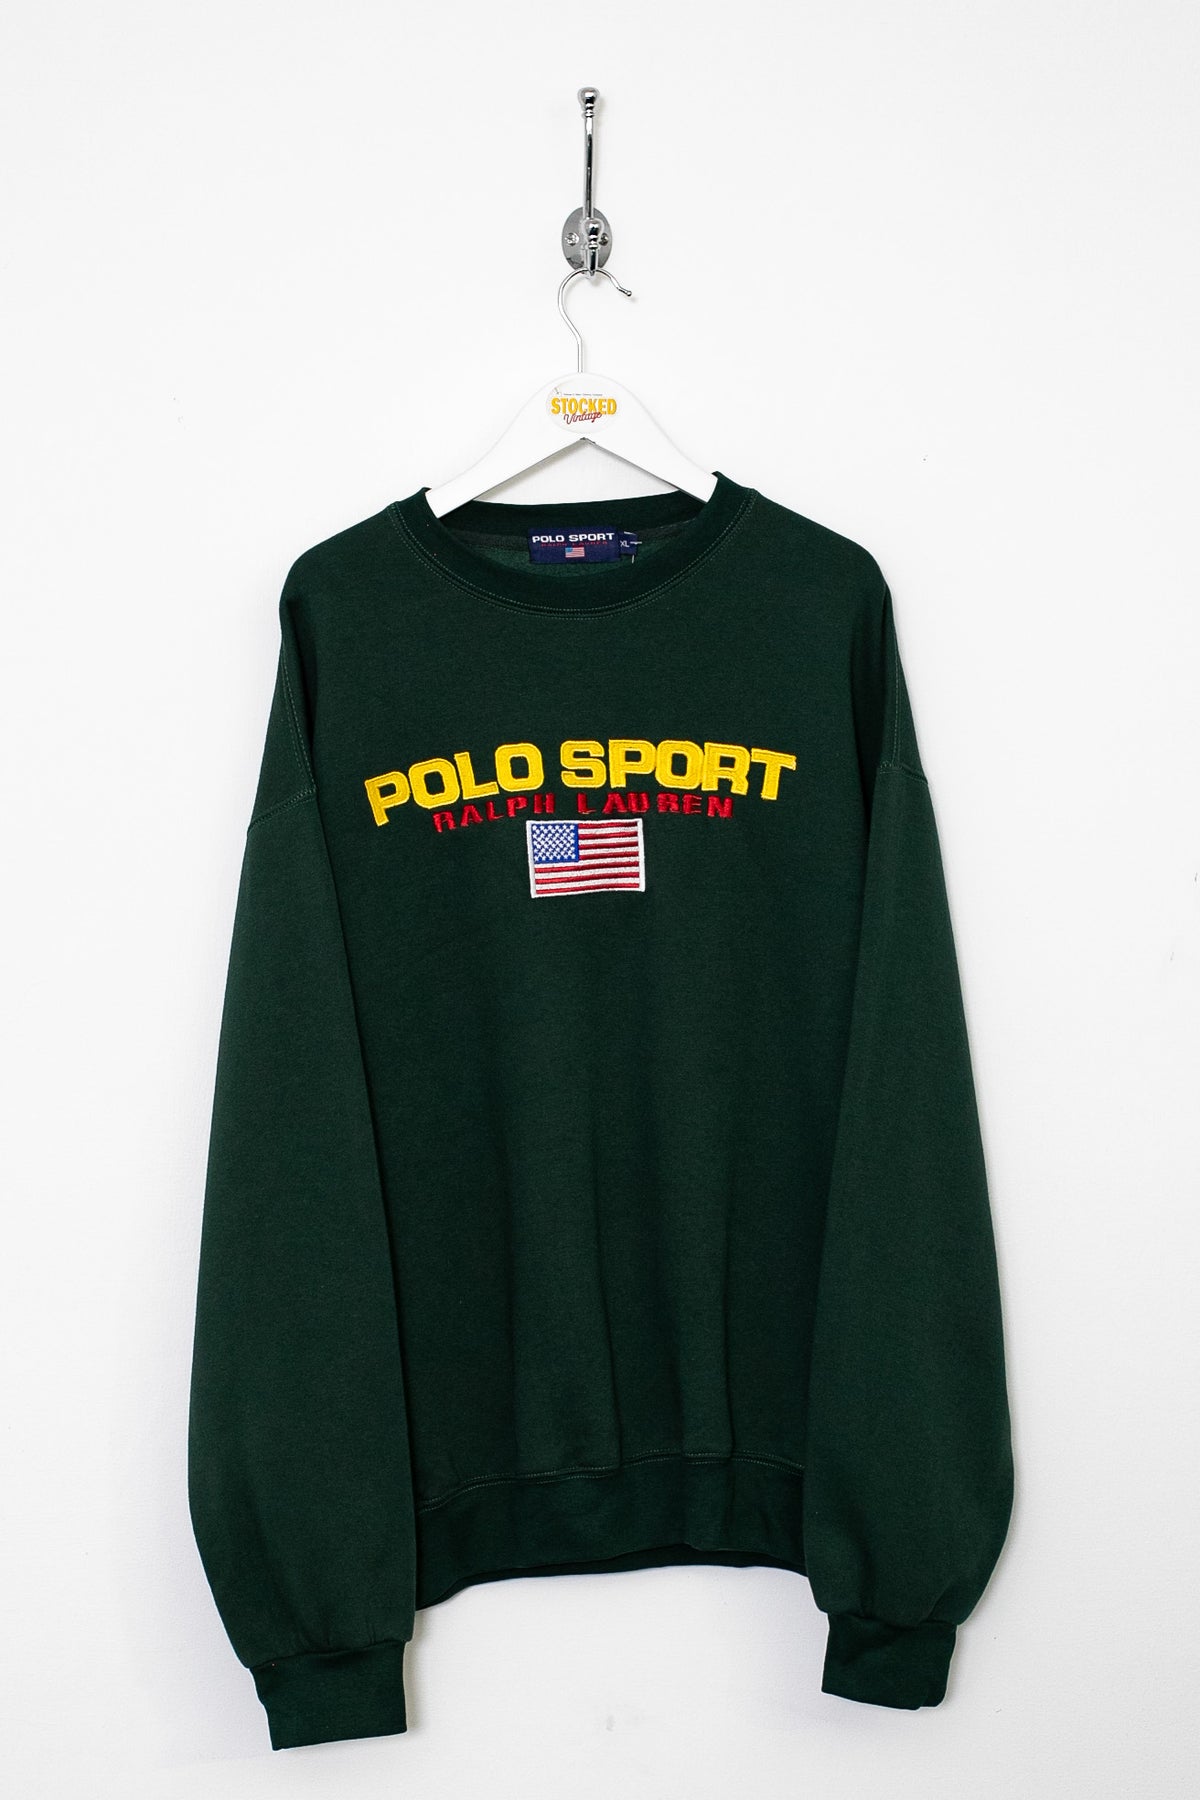 Bootleg Ralph Lauren Polo Sport Sweatshirt (XL)